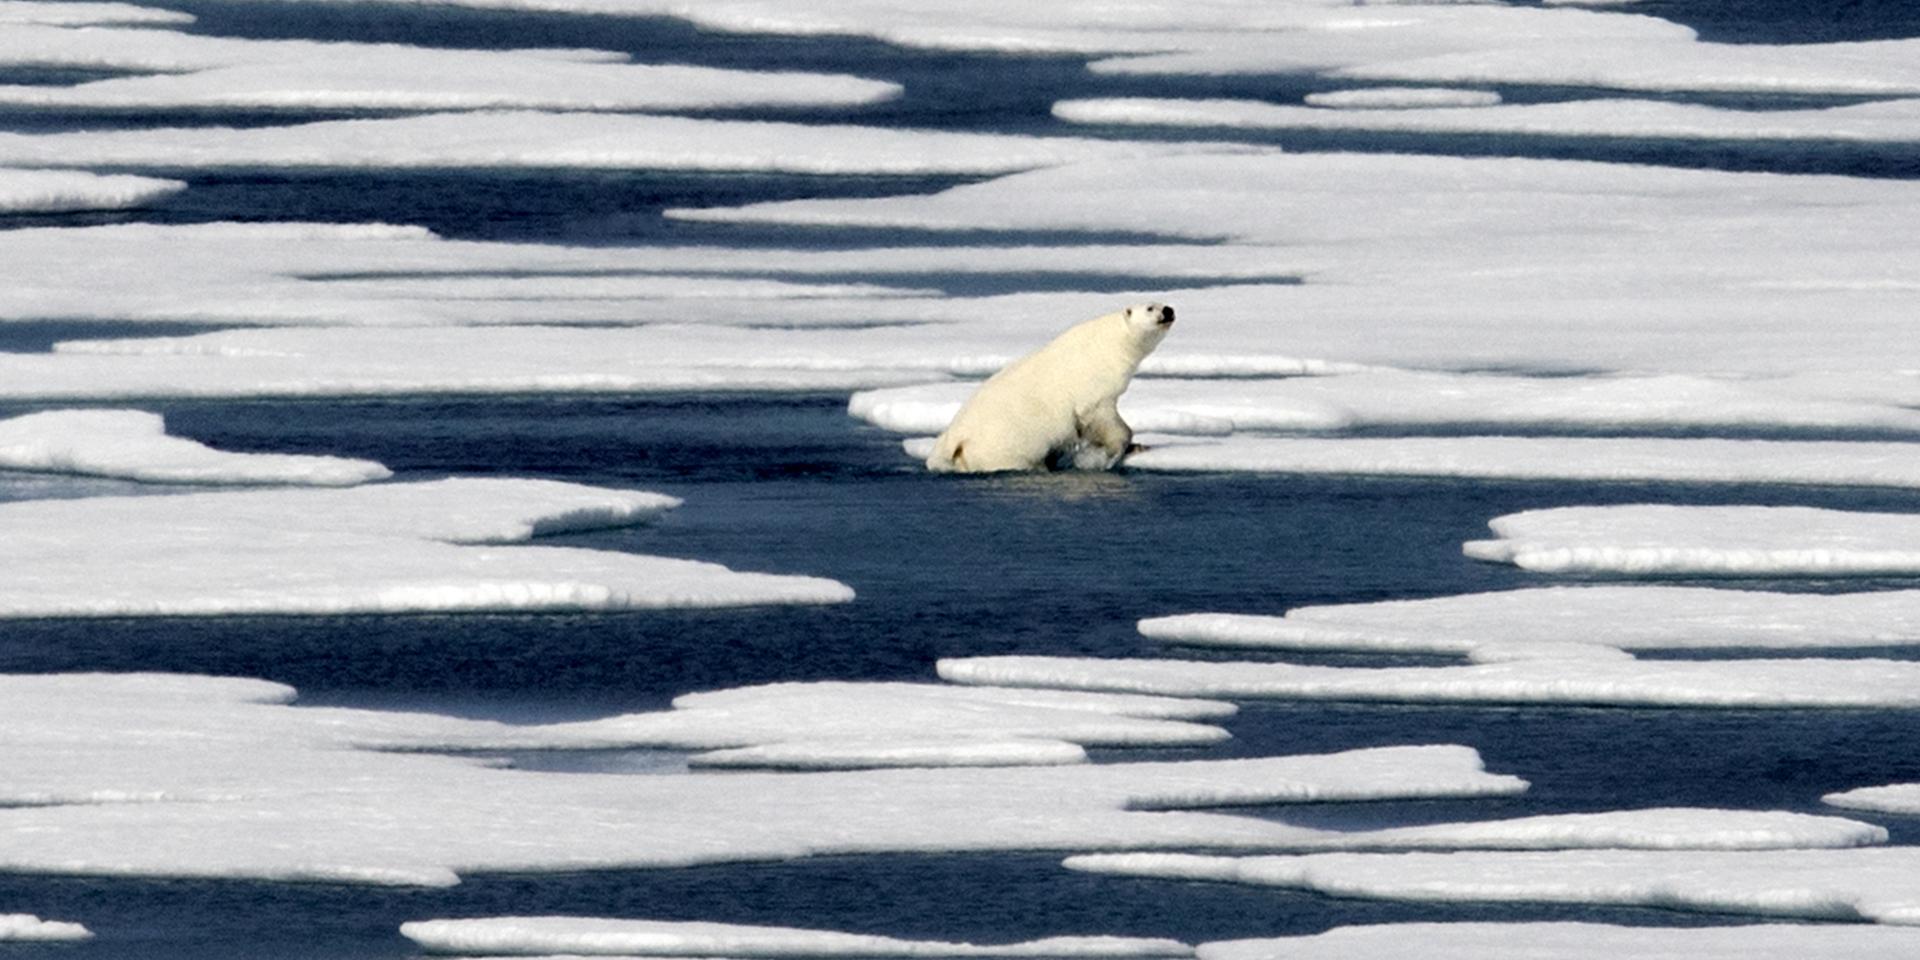 Smältande isar tros vara anledningen till att flera isbjörnar samlats utanför Ryrkajpij. Björnen på bilden kravlar sig upp på ett isblock längre västerut, i den kanadensiska delen av Arktis. Arkivbild.